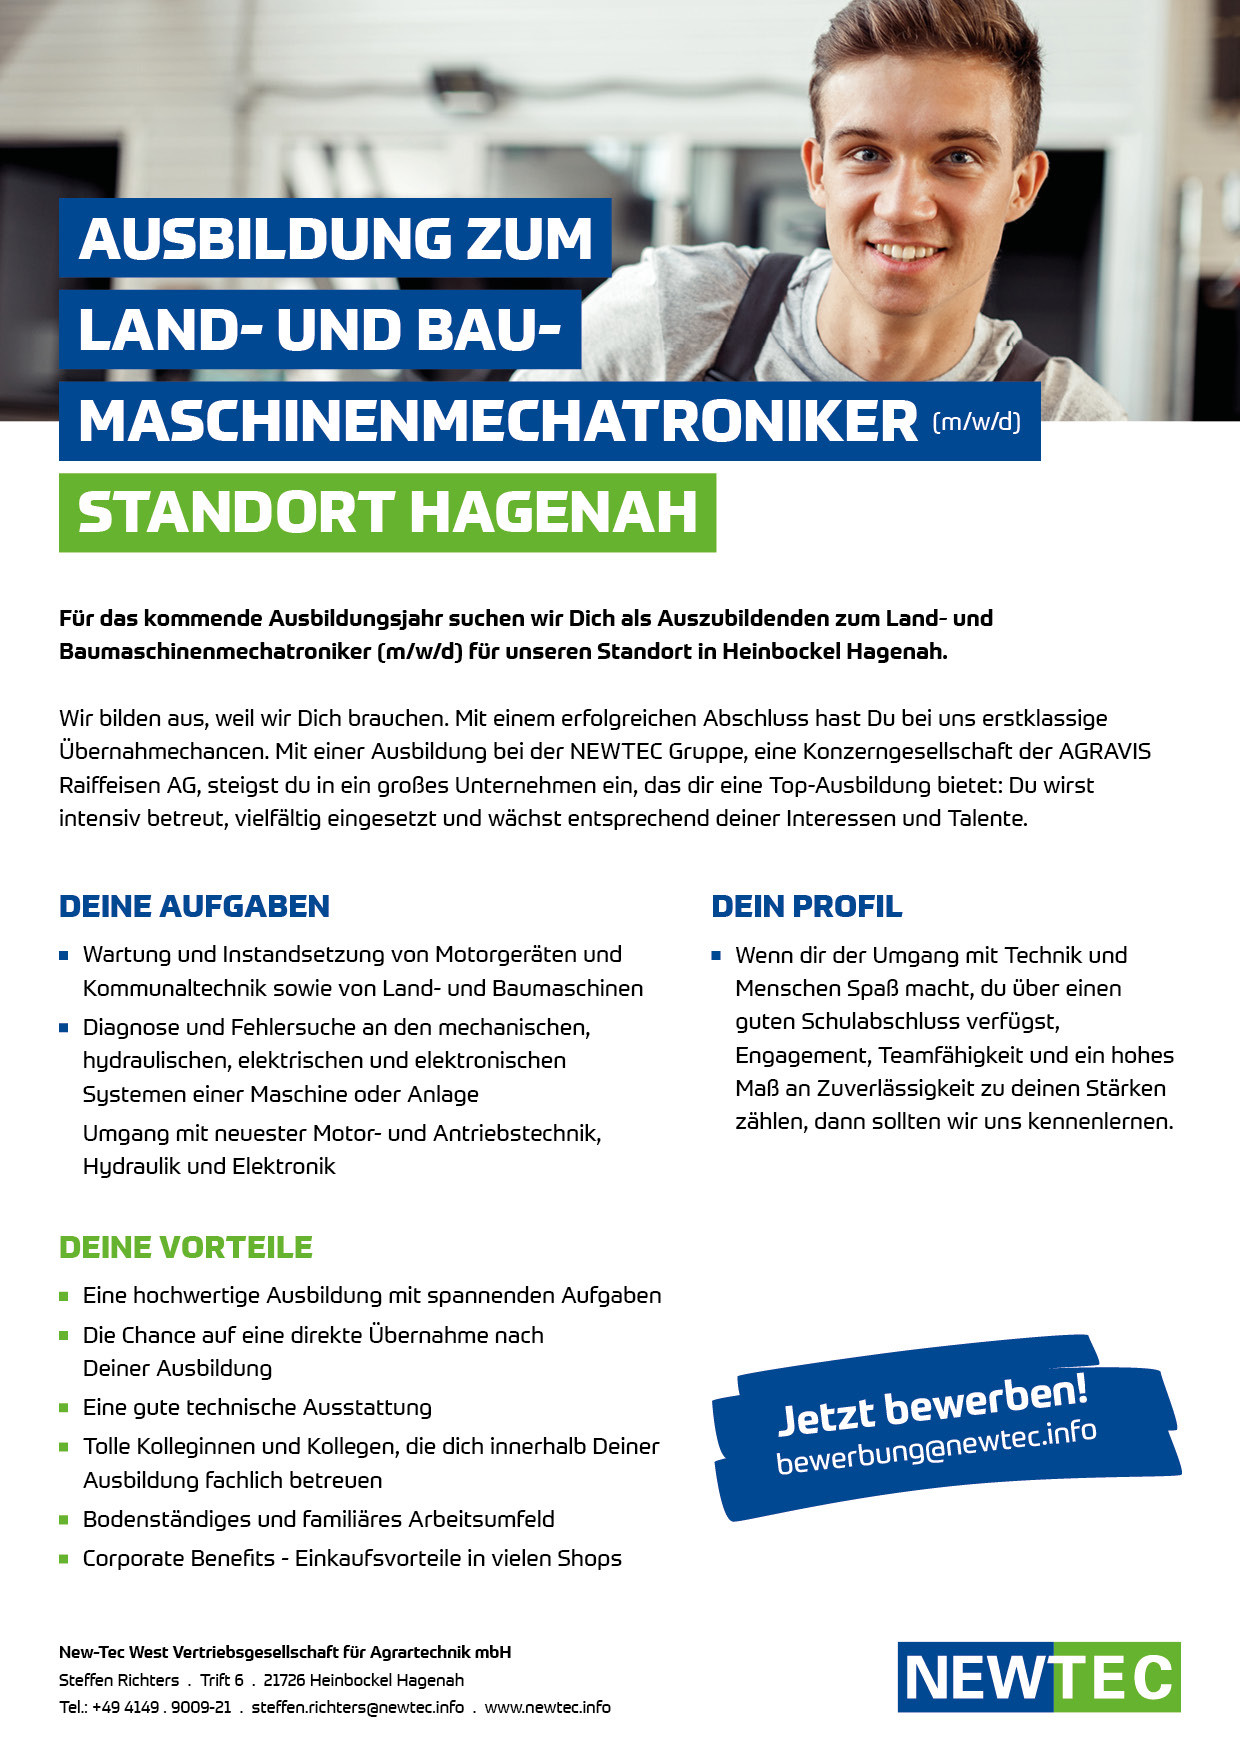 NEWTEC_Stellenanzeige_Ausbildung_Land-_und_Baumaschinenmechatroniker_Hagenah